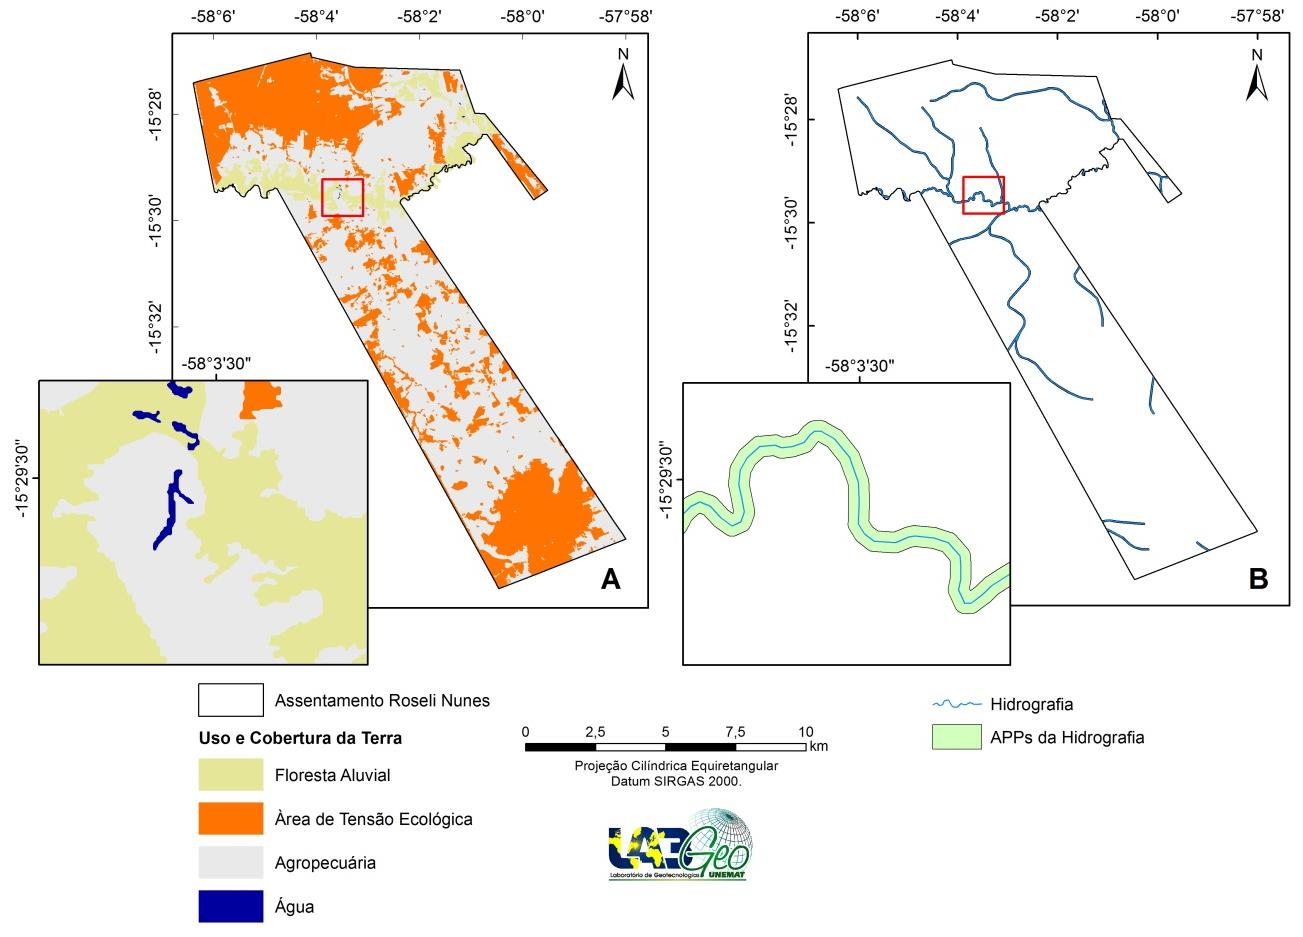 assentamento em estudo há uma prática das duas atividades associadas, conforme aponta o mapa de uso e cobertura da terra.